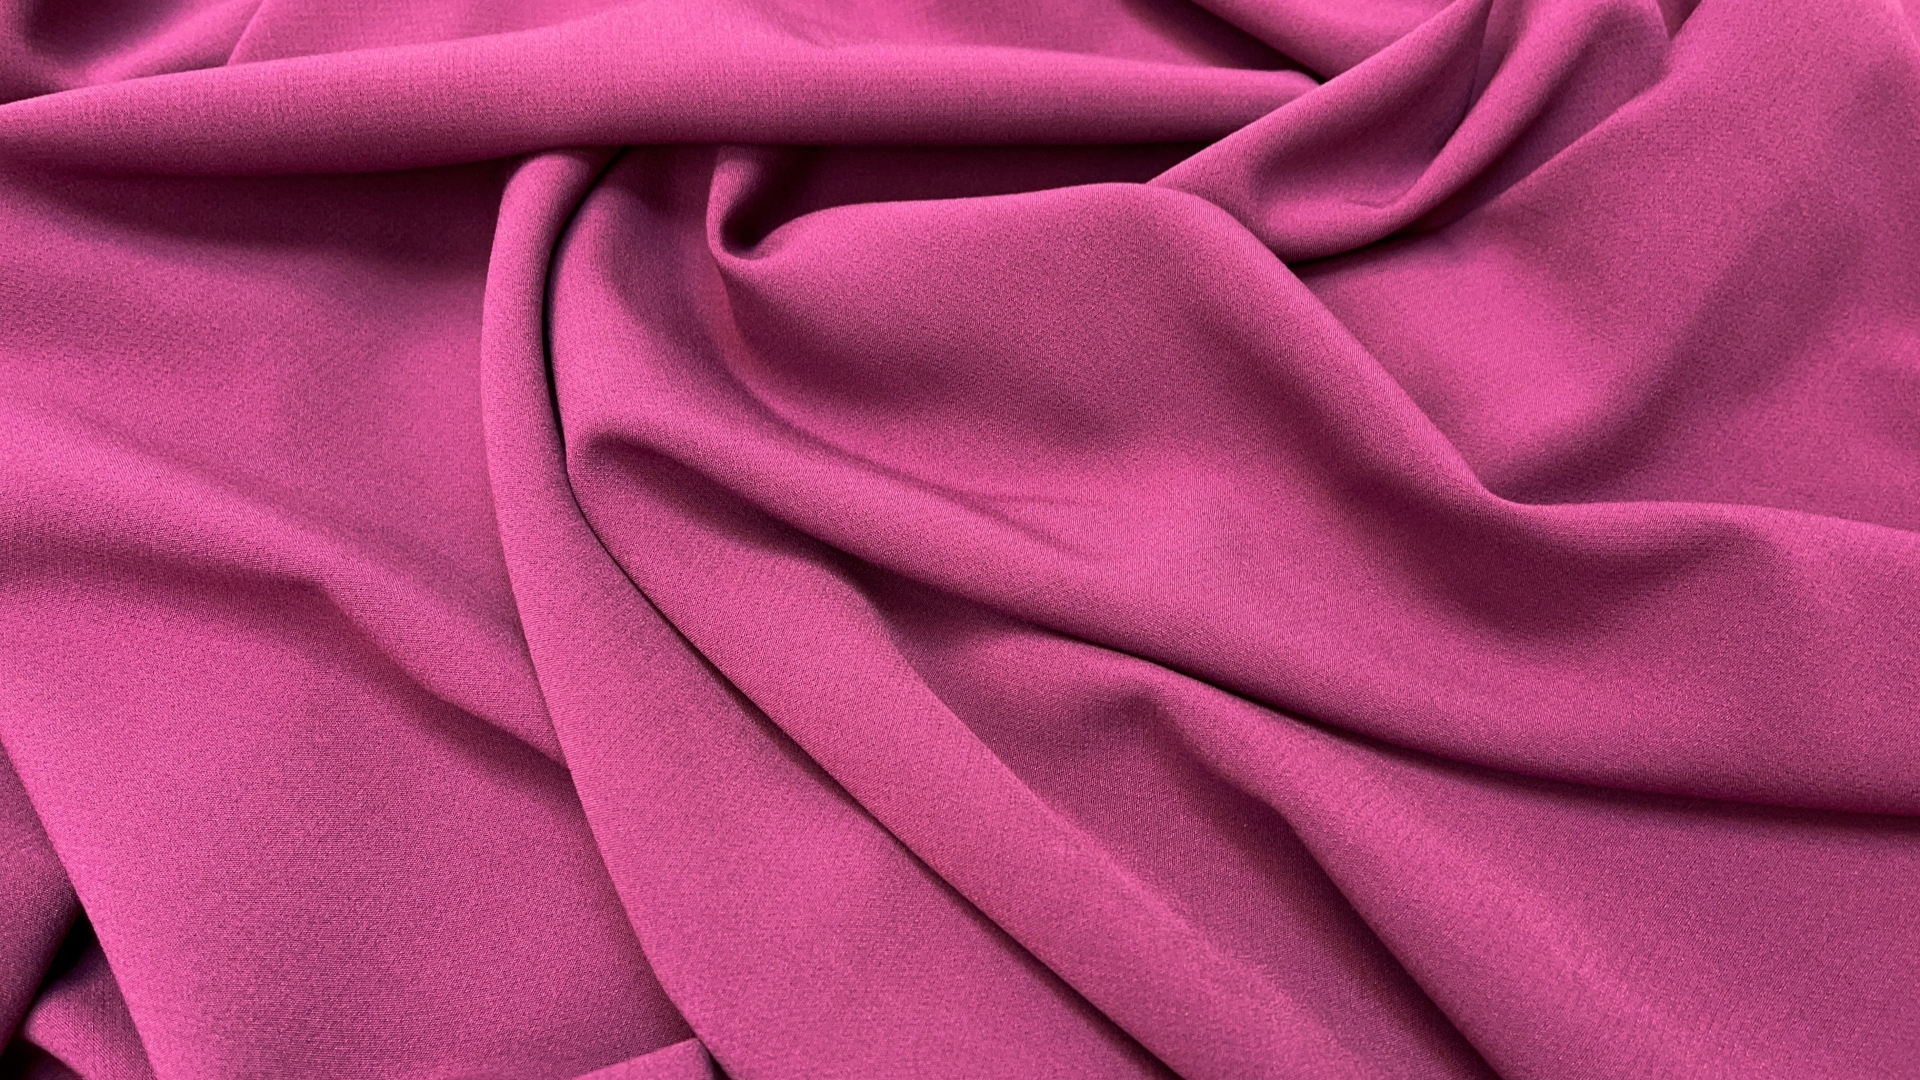 Костюмная ткань цвета разбеленной брусники с розовым подтоном. Тяжелая, пластичная, с отвесом, идеальна для платья, клешеных юбок и широких брюк. Устойчива к сминанию, не пролегает за счет своей плотности.